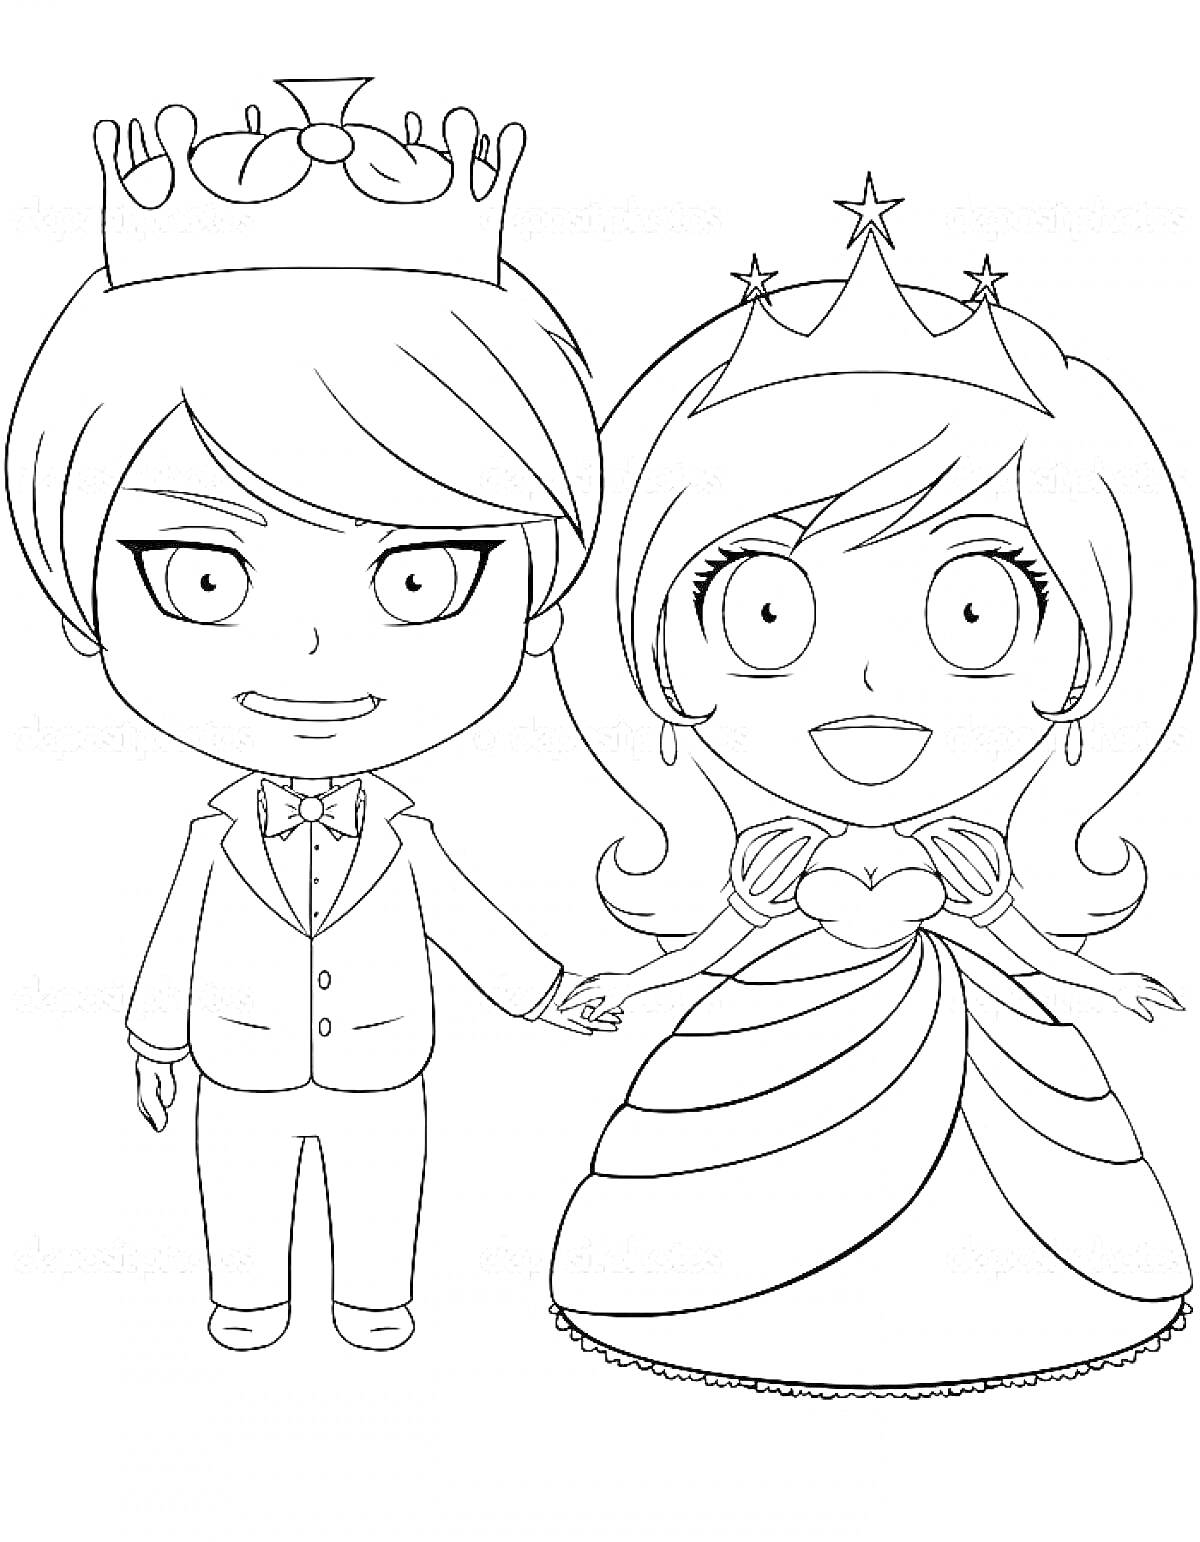 Принц и принцесса, держащиеся за руки, в короне и тиаре, принц в костюме, принцесса в платье с рюшами